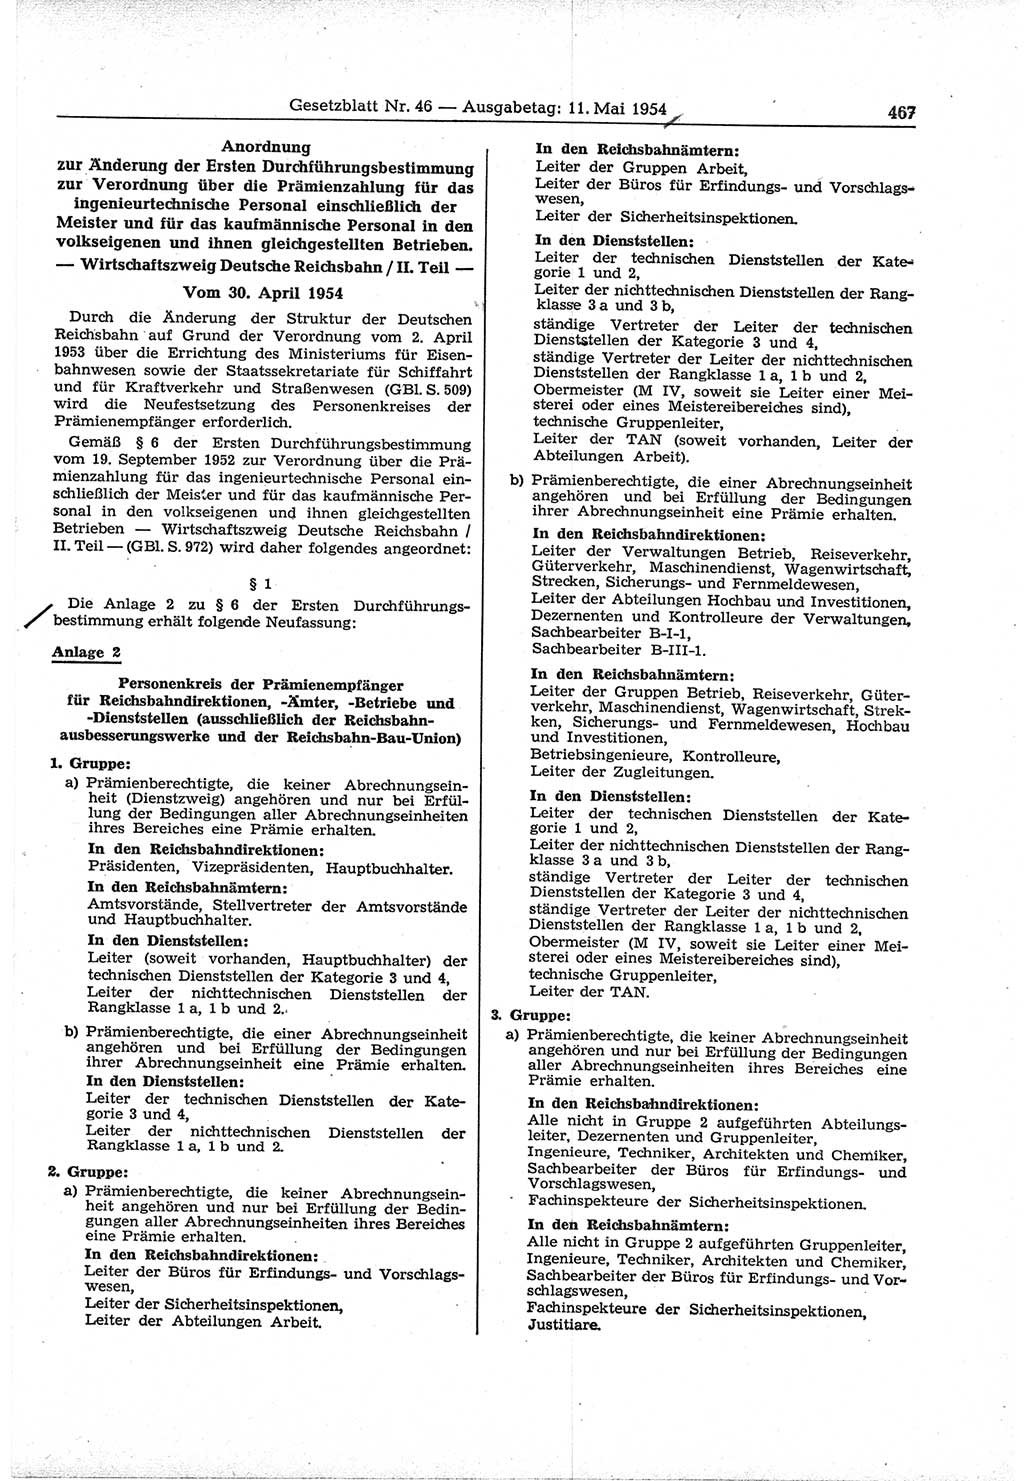 Gesetzblatt (GBl.) der Deutschen Demokratischen Republik (DDR) 1954, Seite 467 (GBl. DDR 1954, S. 467)